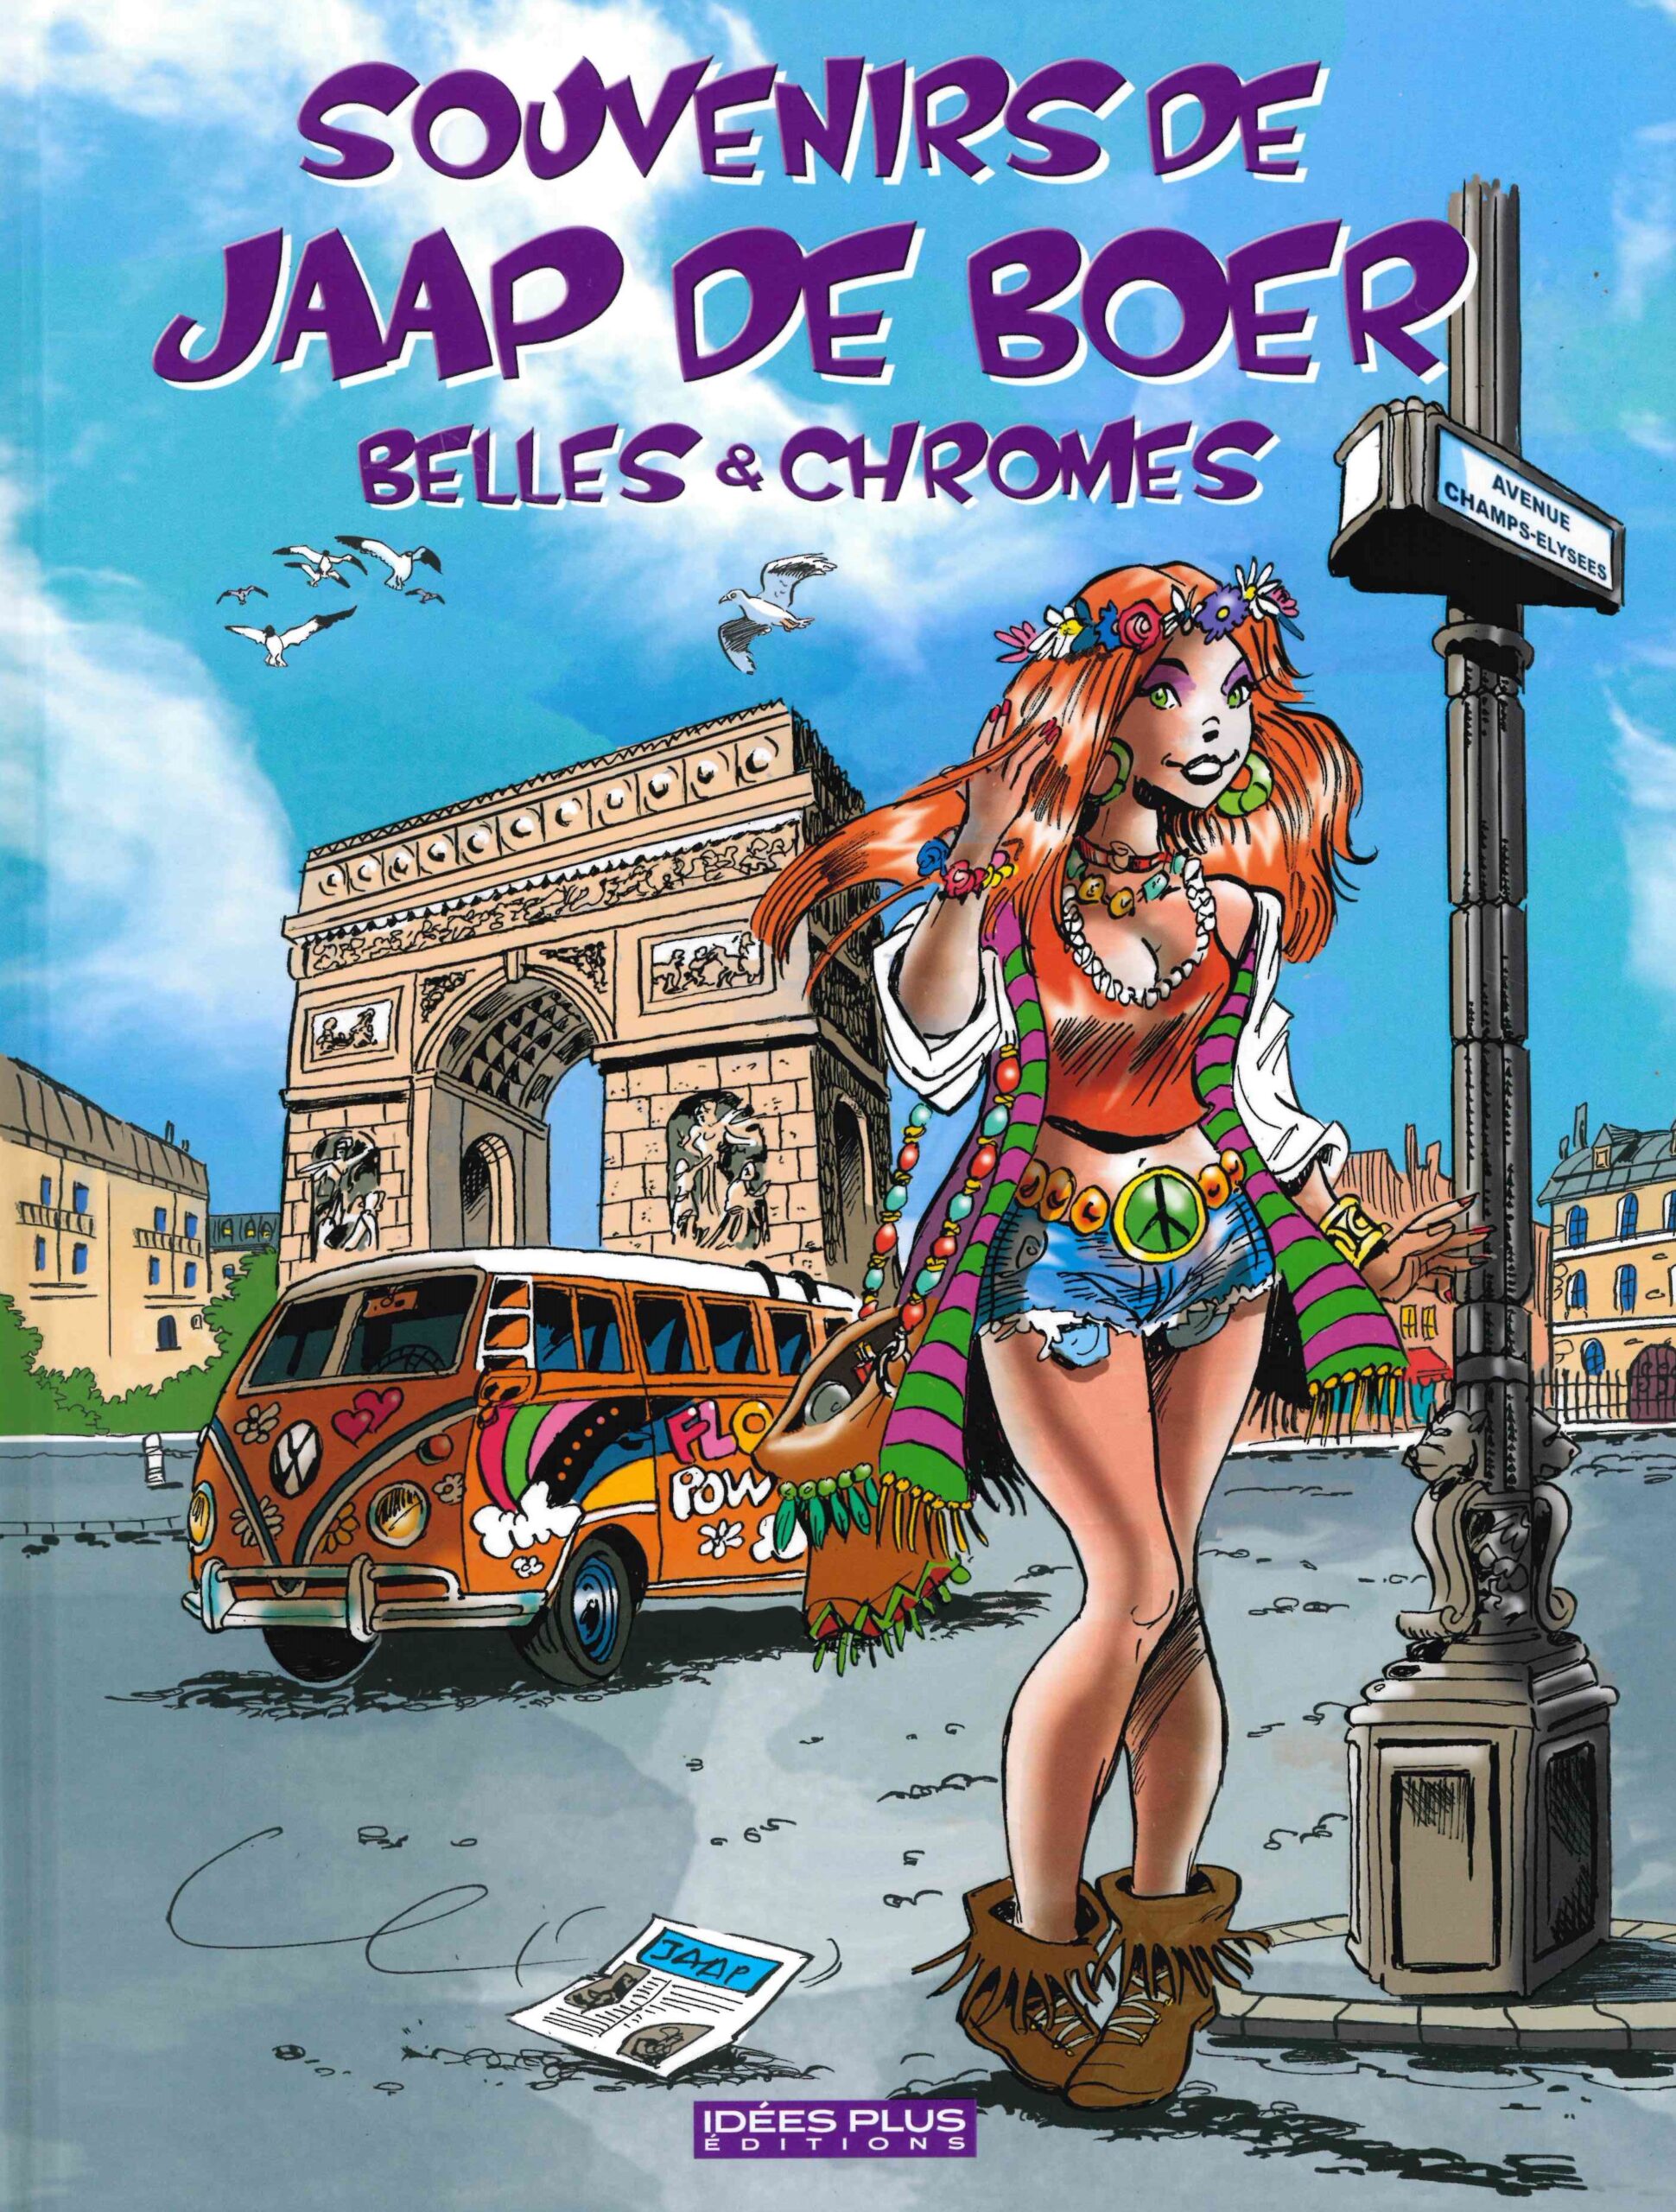 Souvenirs de Jaap de Boer : Belles & chromes